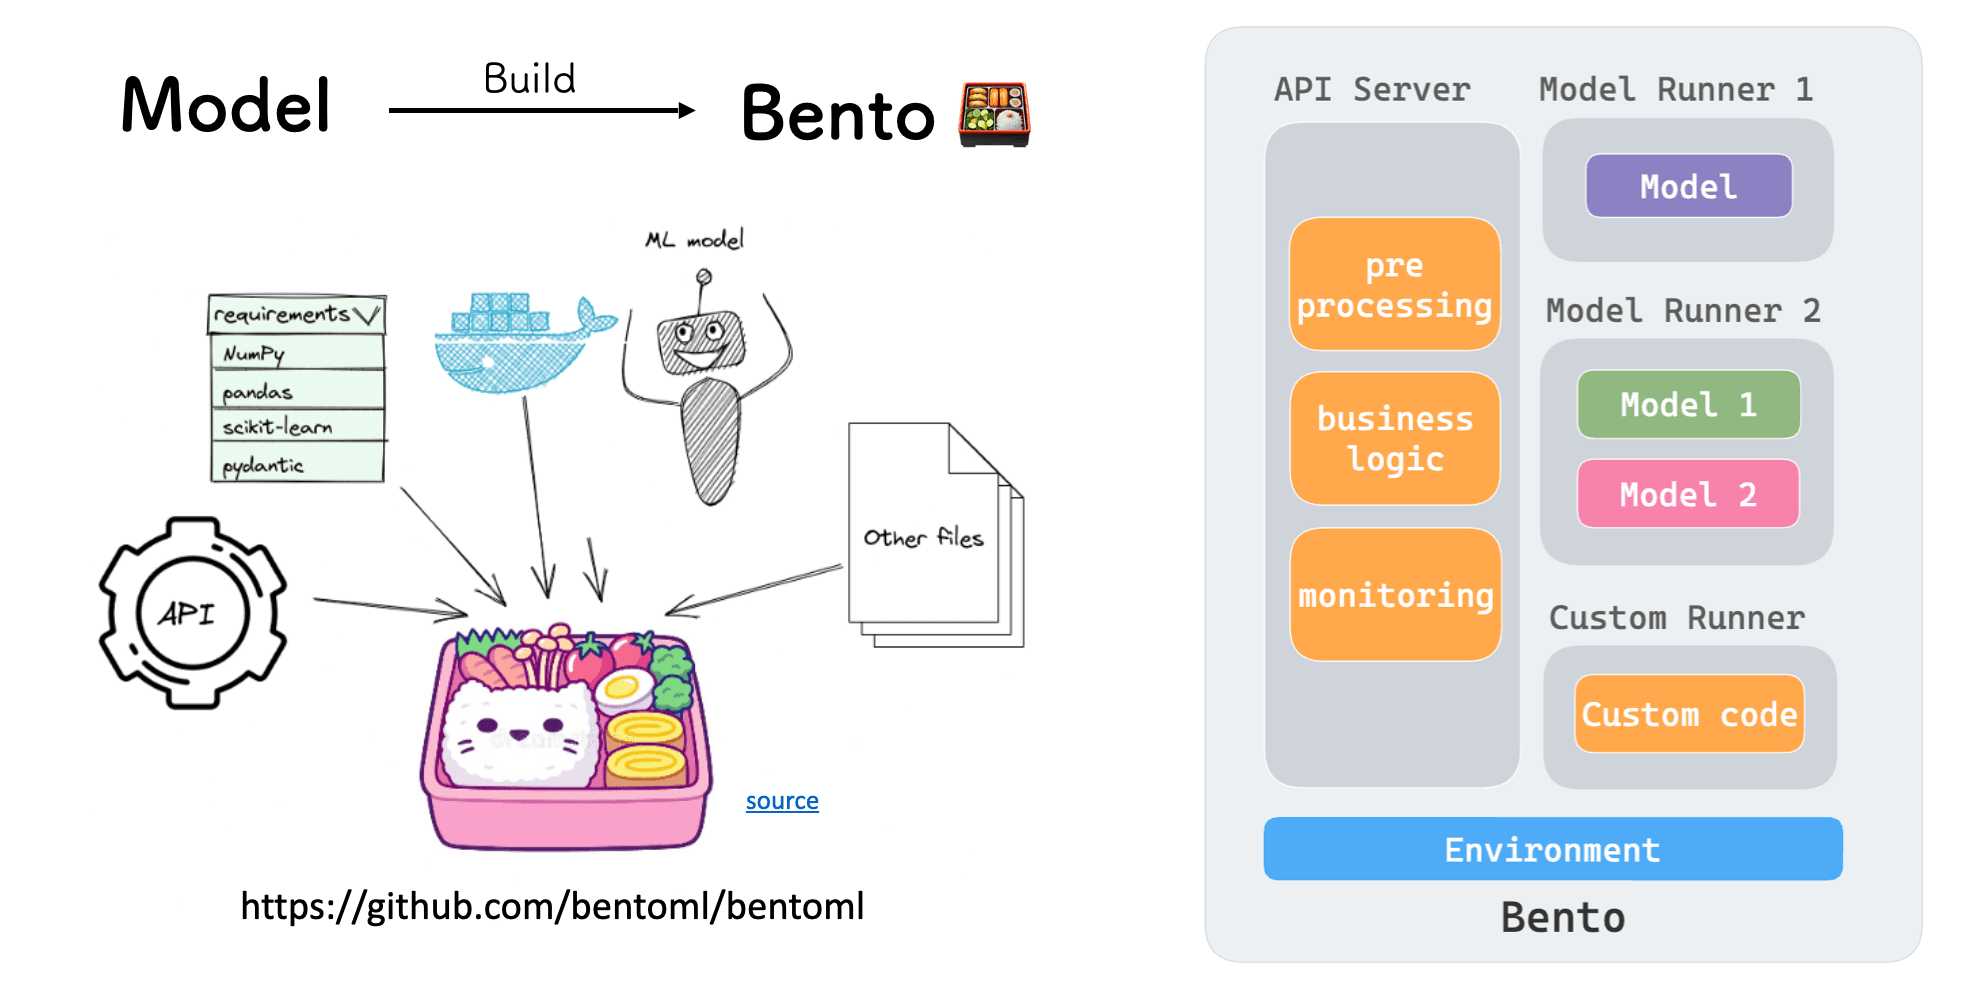 bento-bentoml-artifact.png